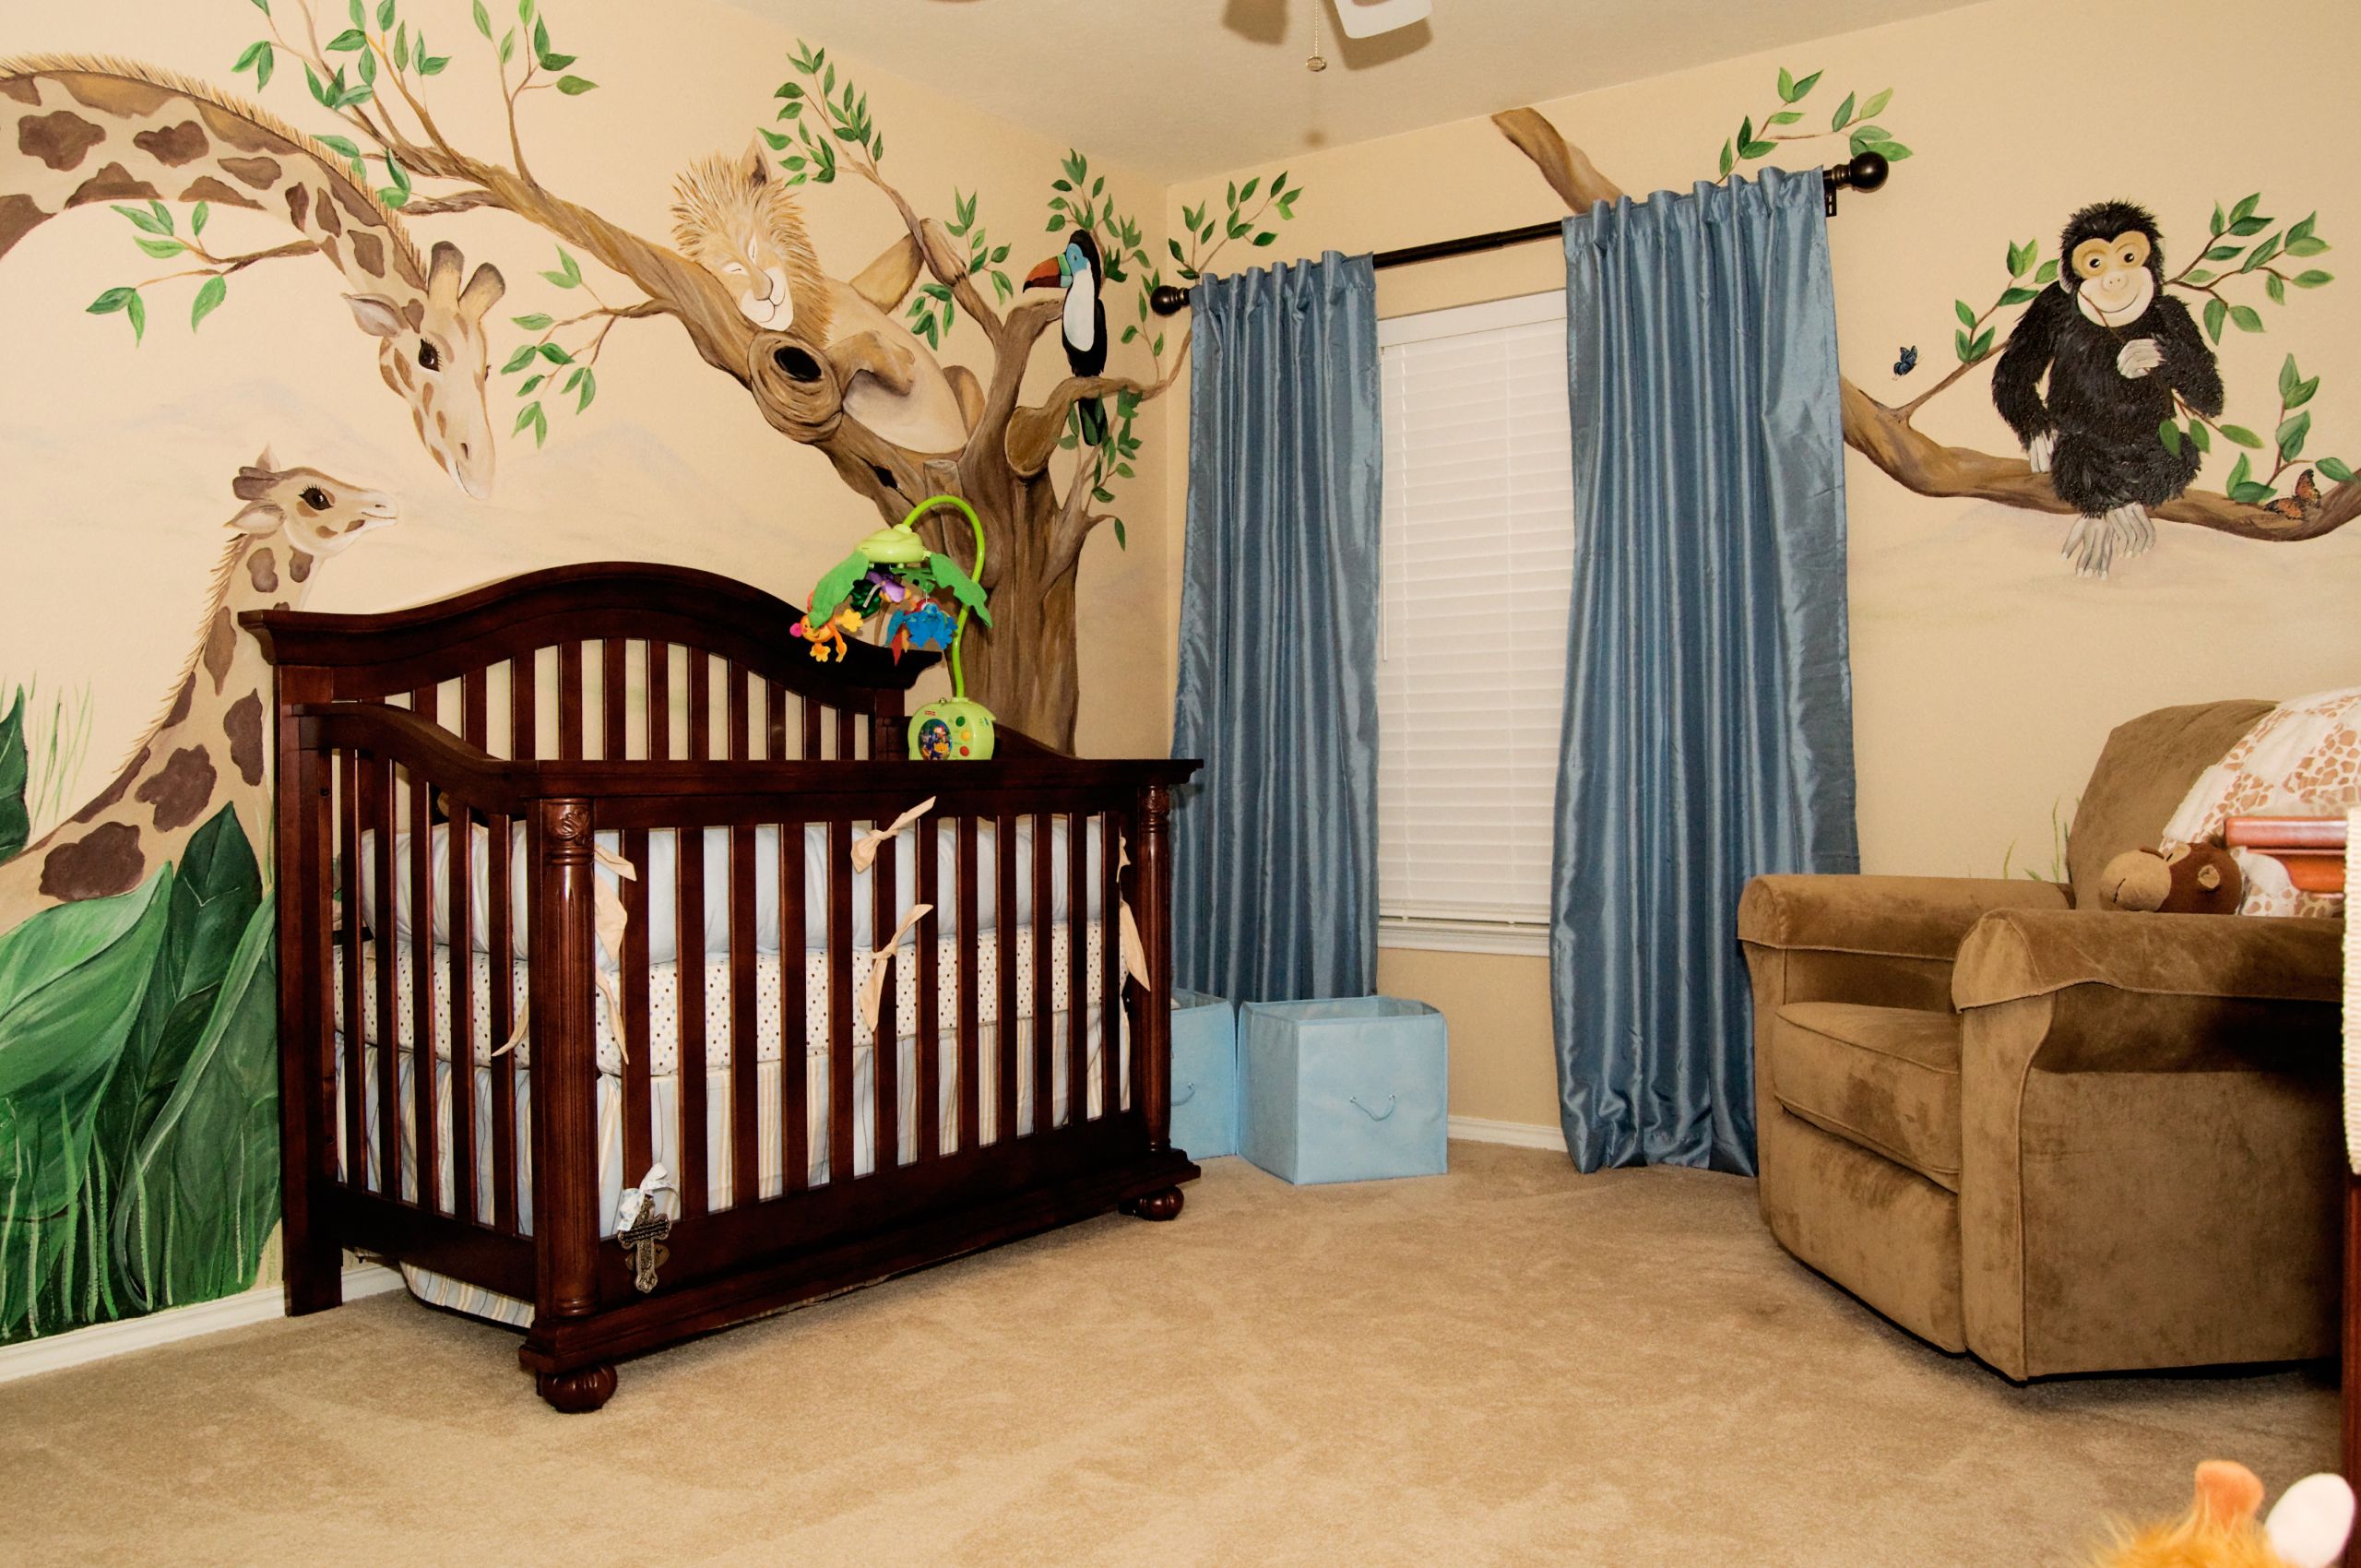 Baby Decor Ideas
 Adorable Baby Room Décor Ideas